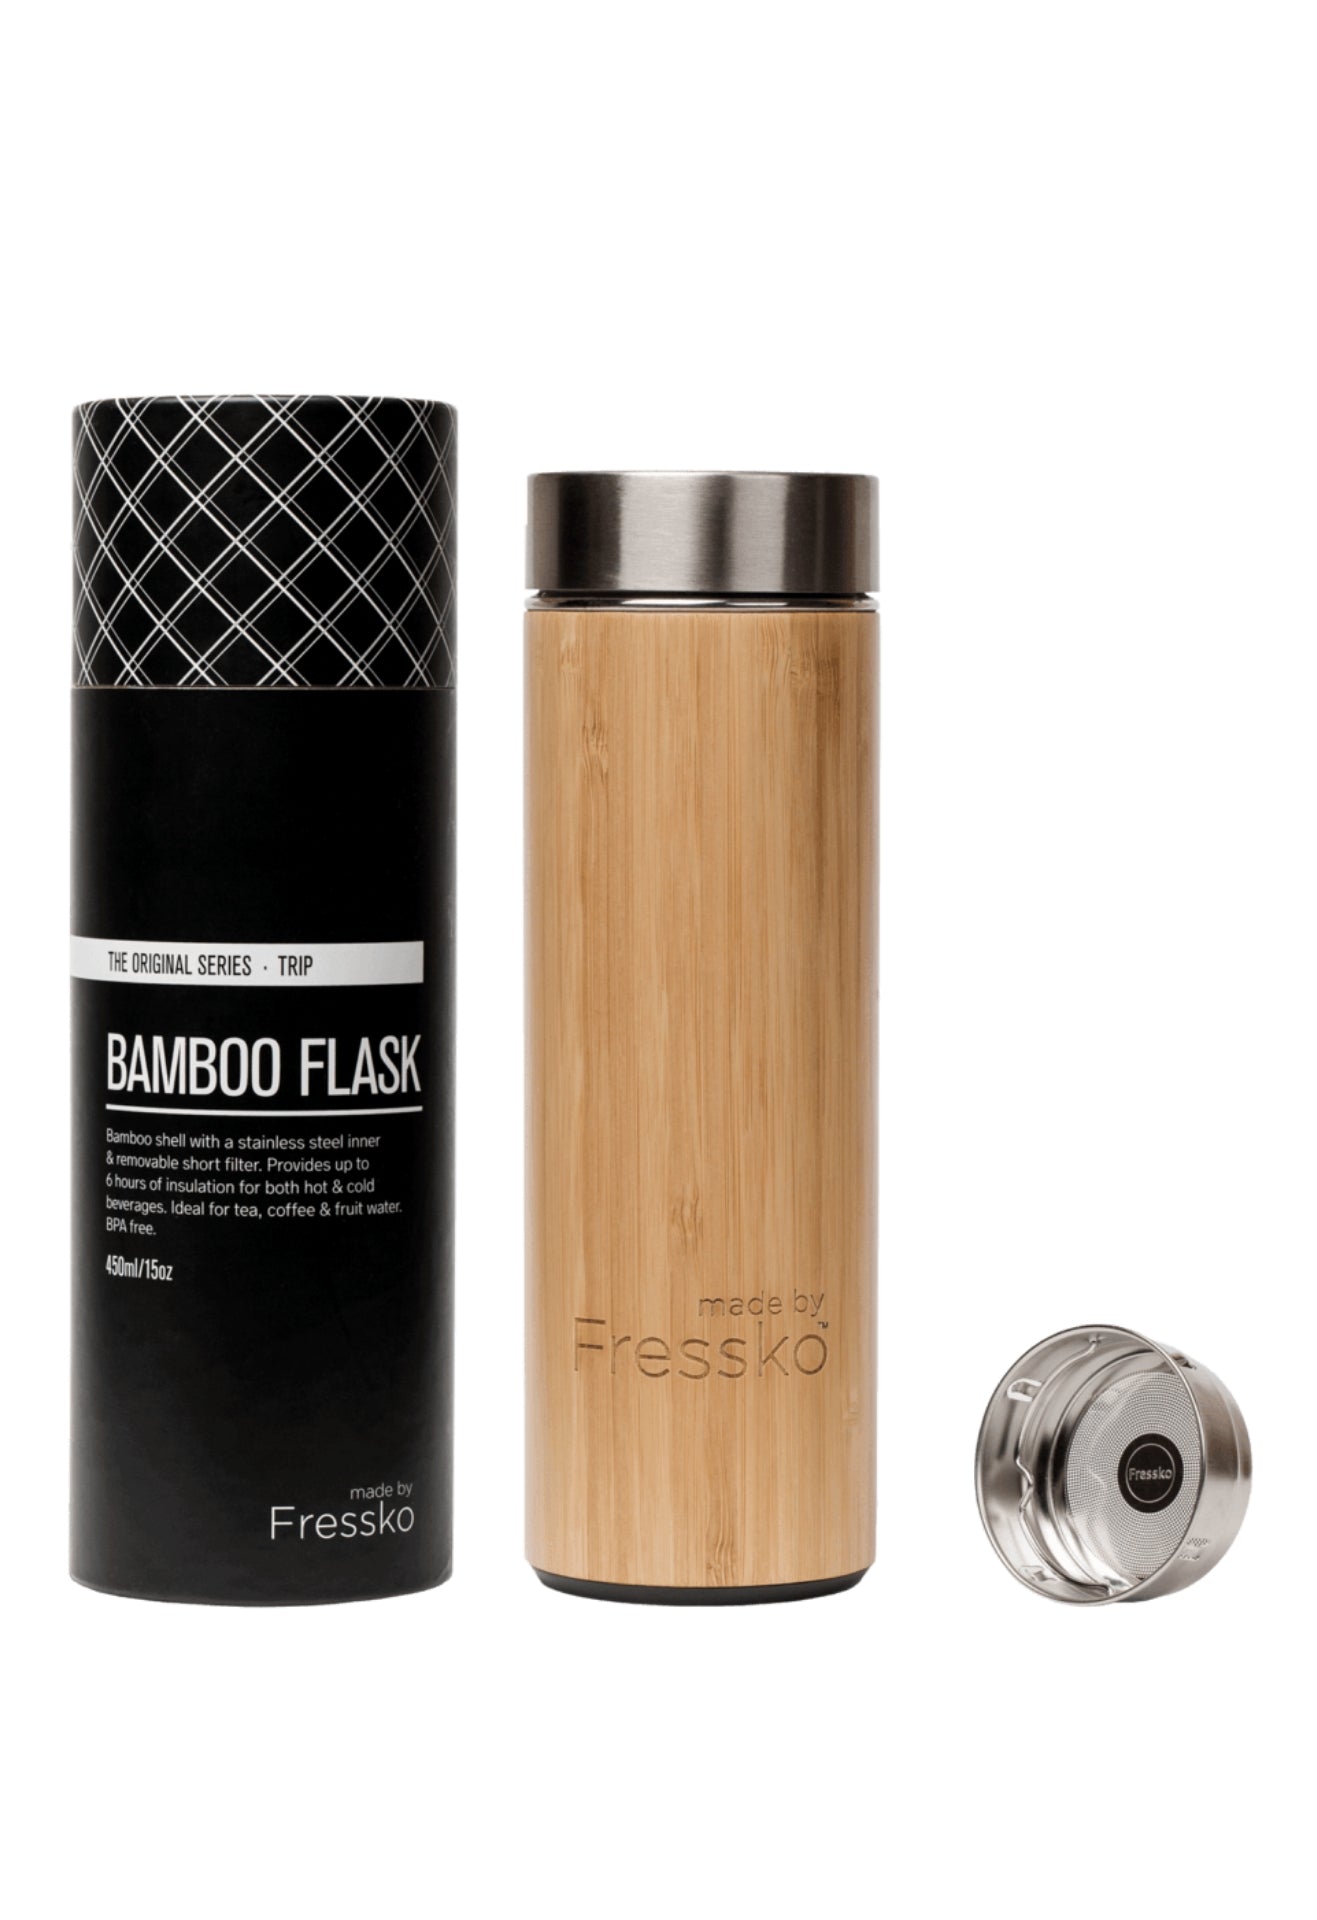 Fressko Trip Bamboo Flask